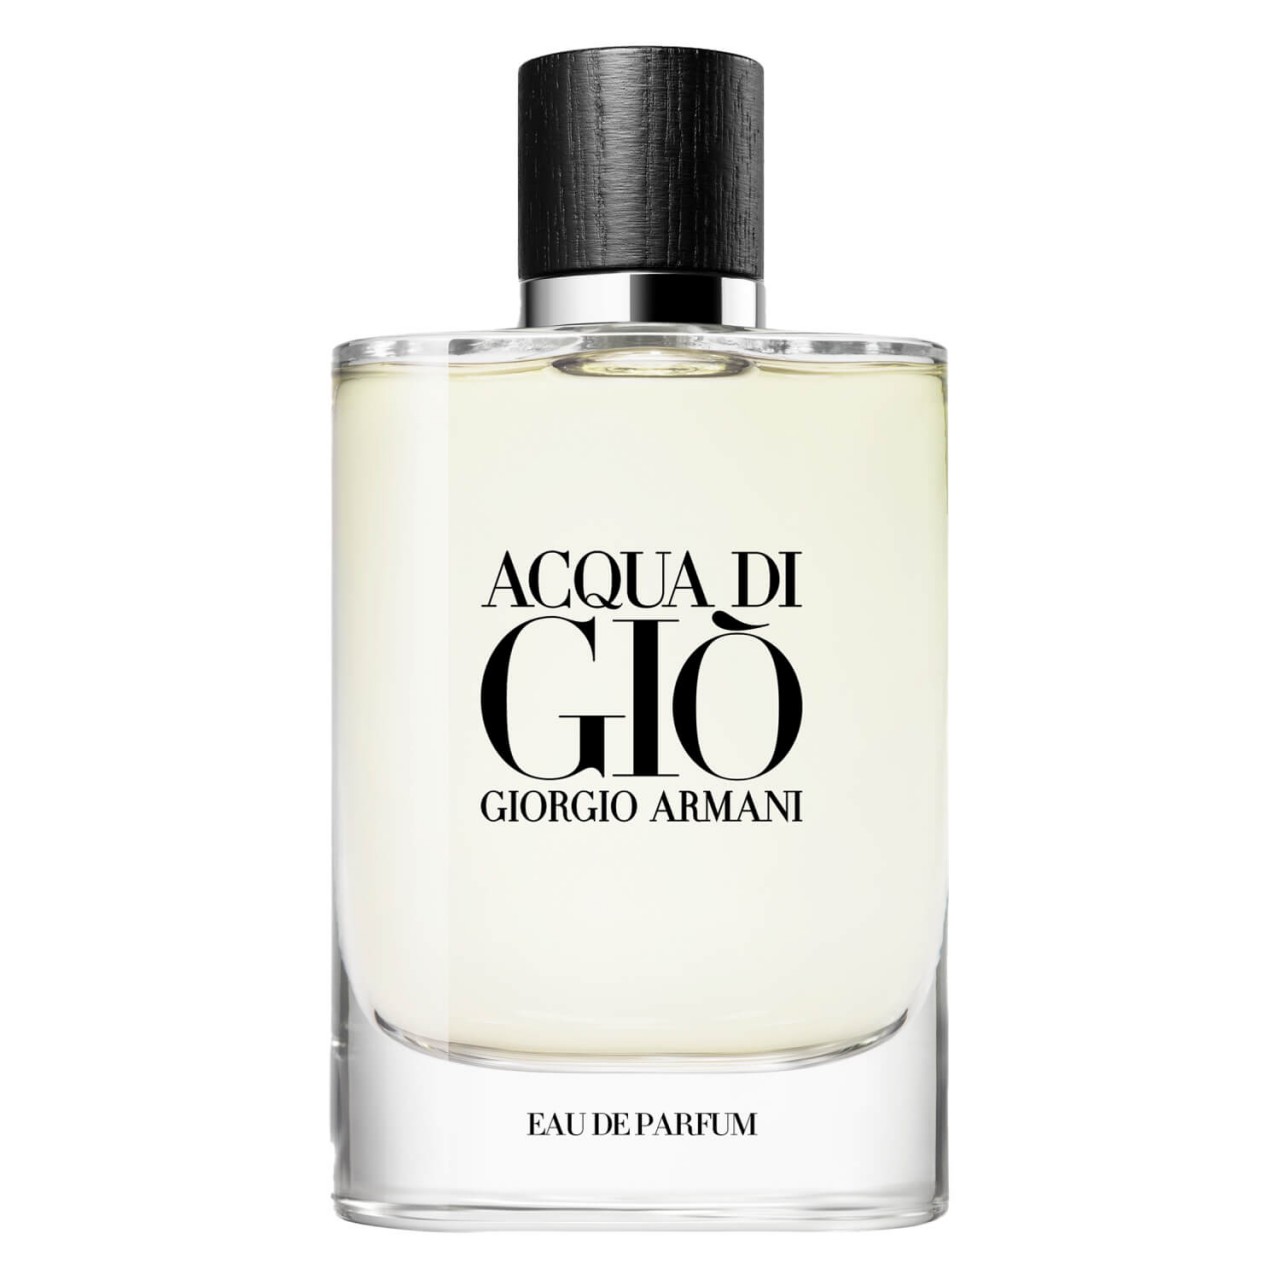 Acqua di Giò - Eau de Parfum von Giorgio Armani